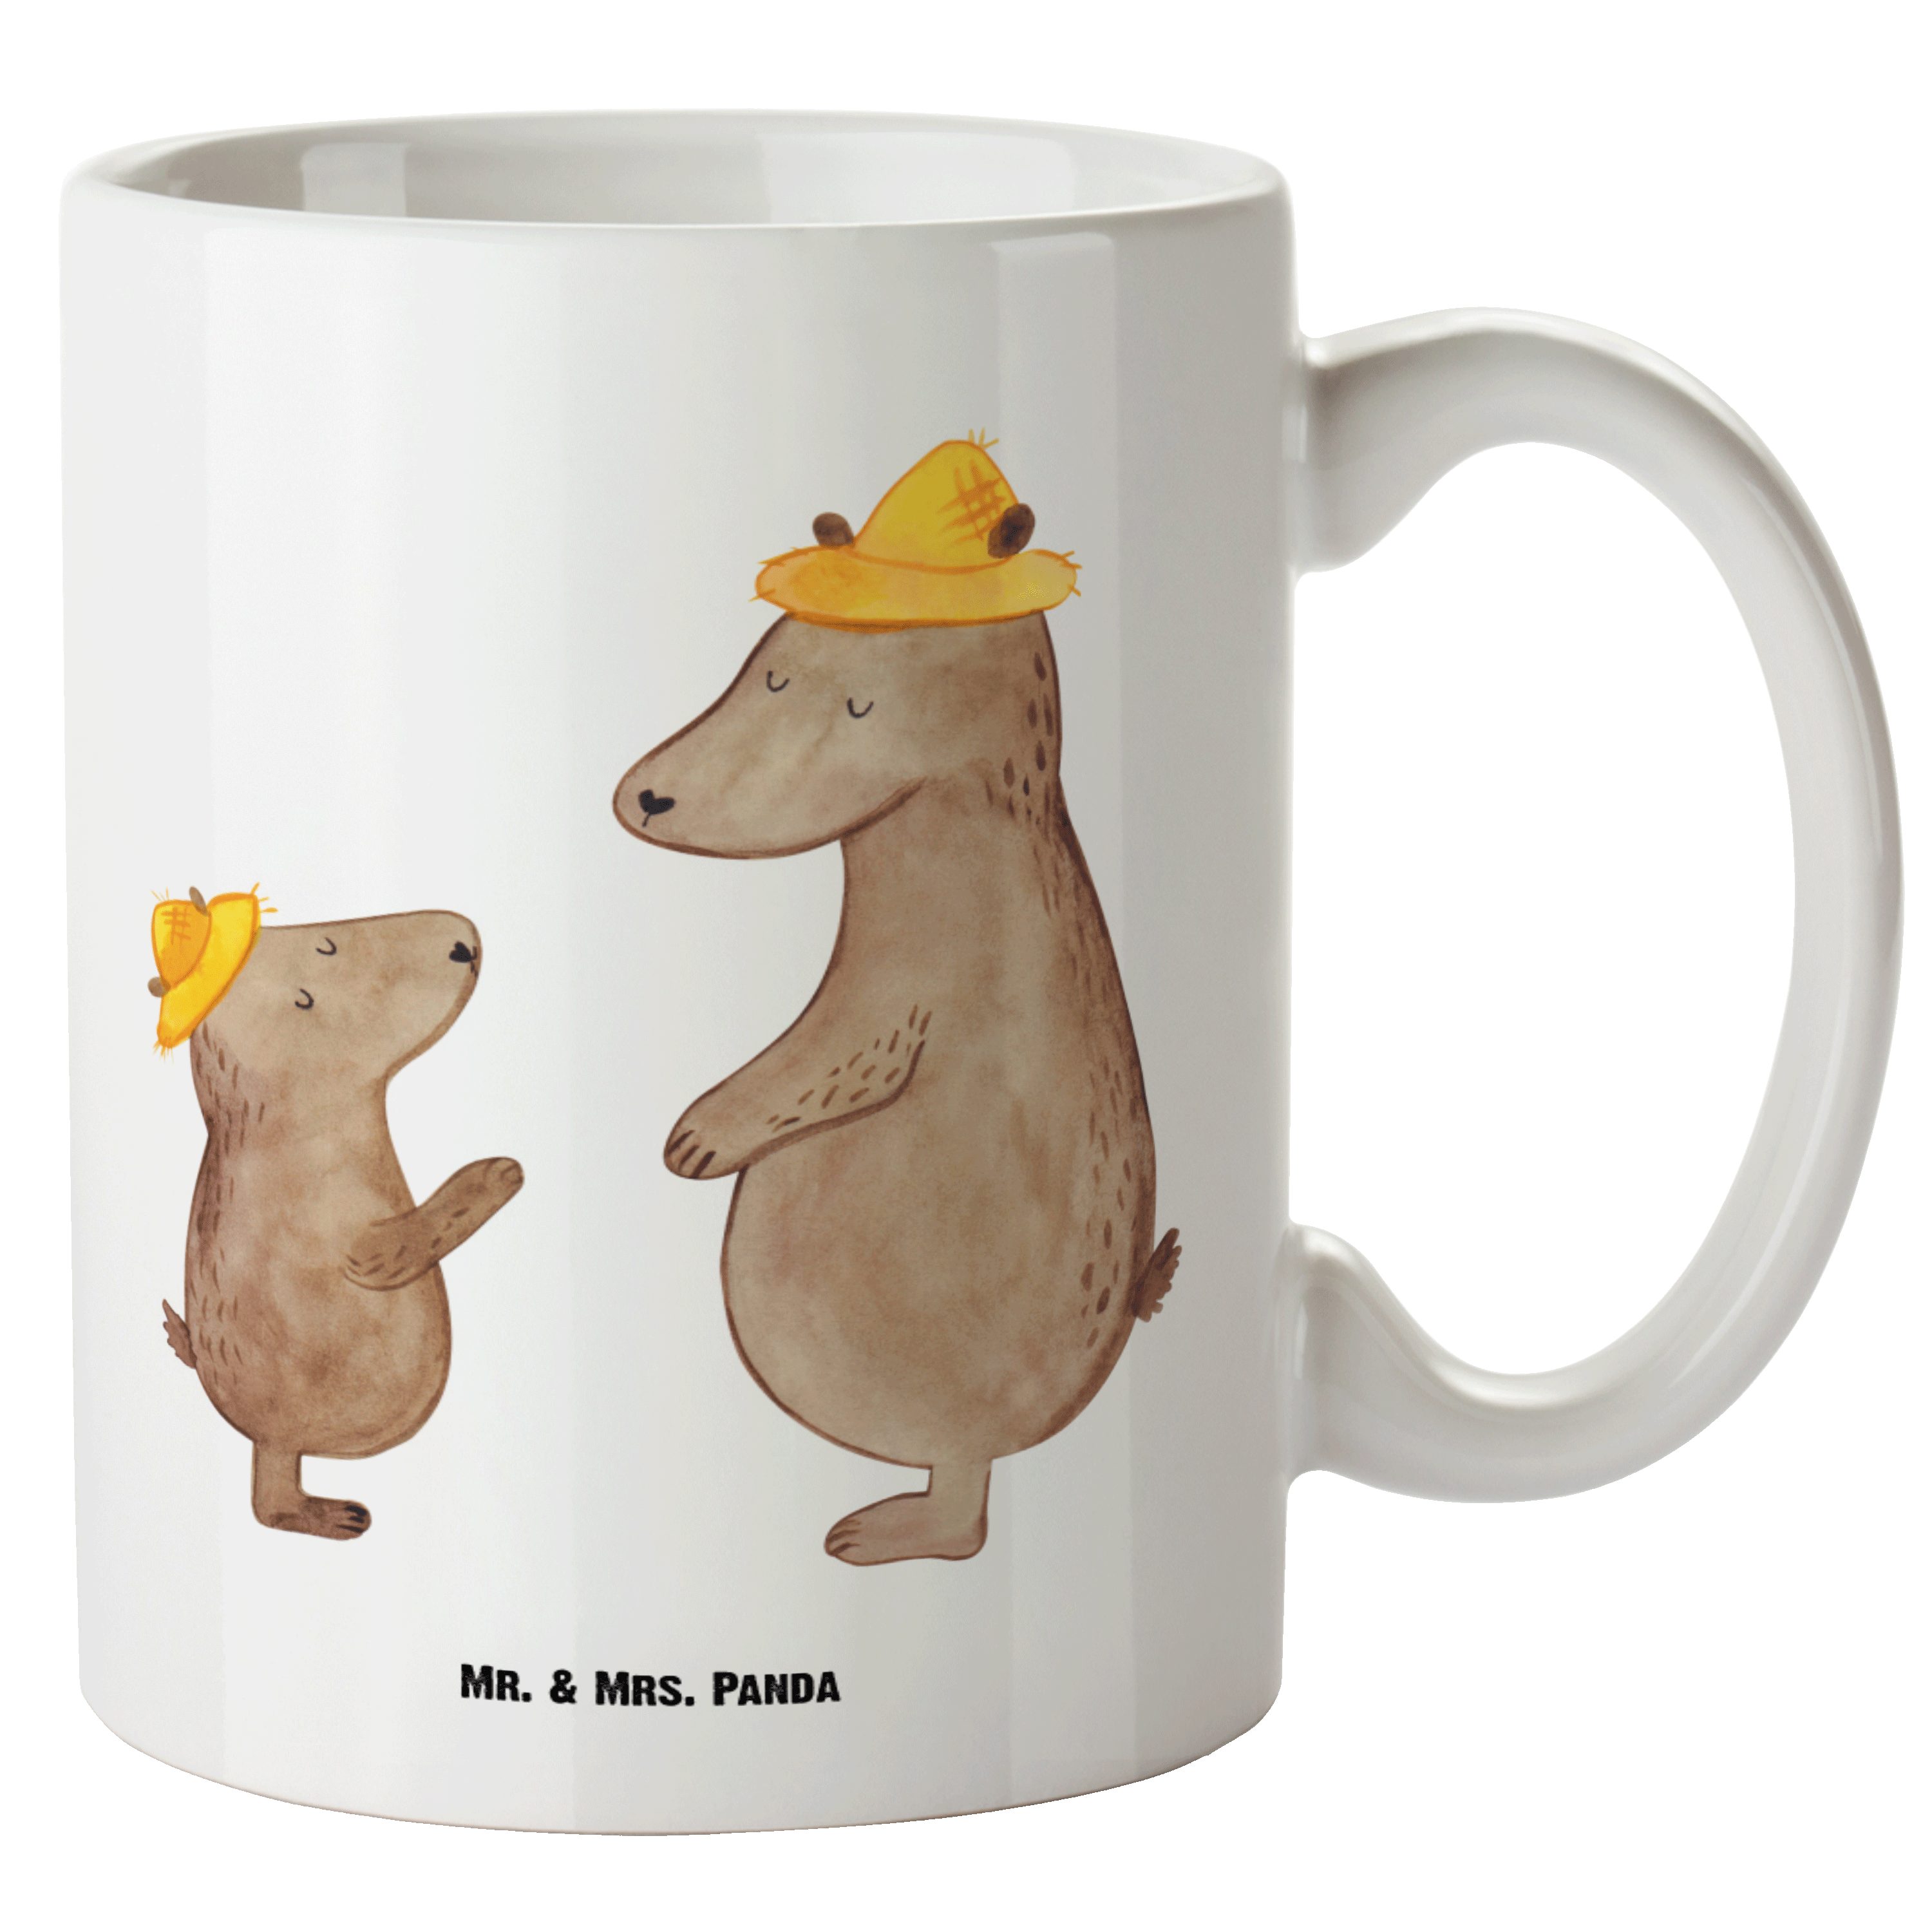 Mr. & Mrs. Panda Tasse Bären mit Hut - Weiß - Geschenk, spülmaschinenfest, Familie, Schweste, XL Tasse Keramik